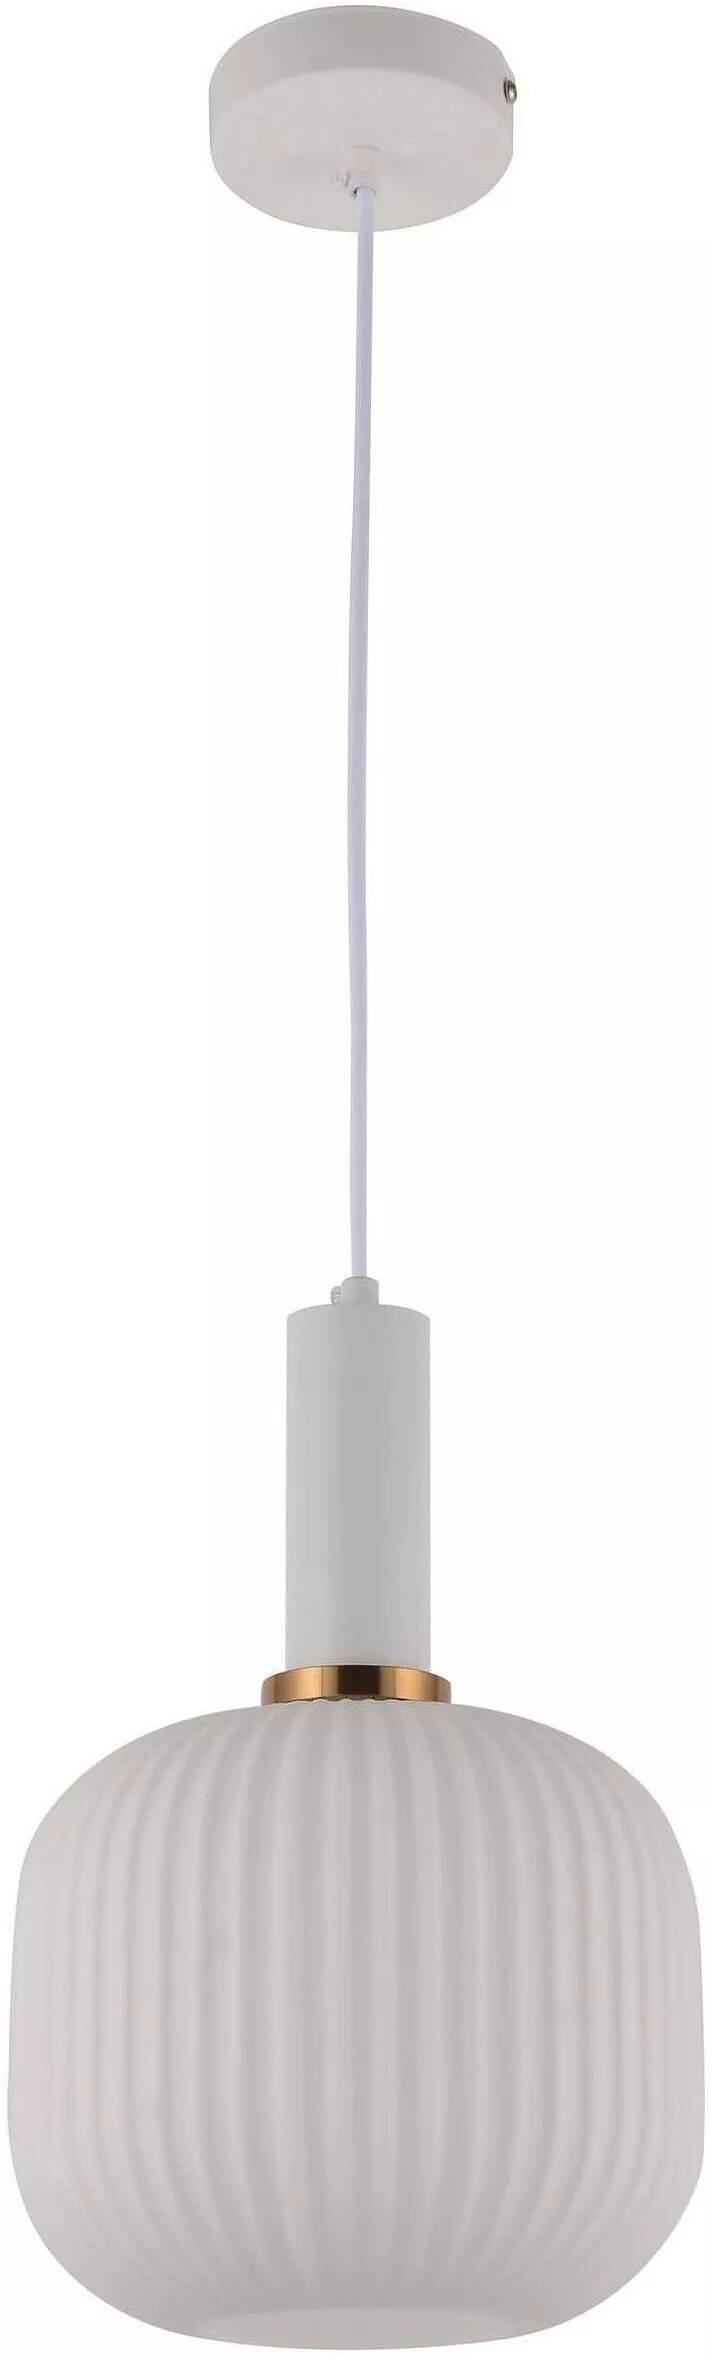 Lampe suspension en verre blanc et métal blanc et doré Ø20